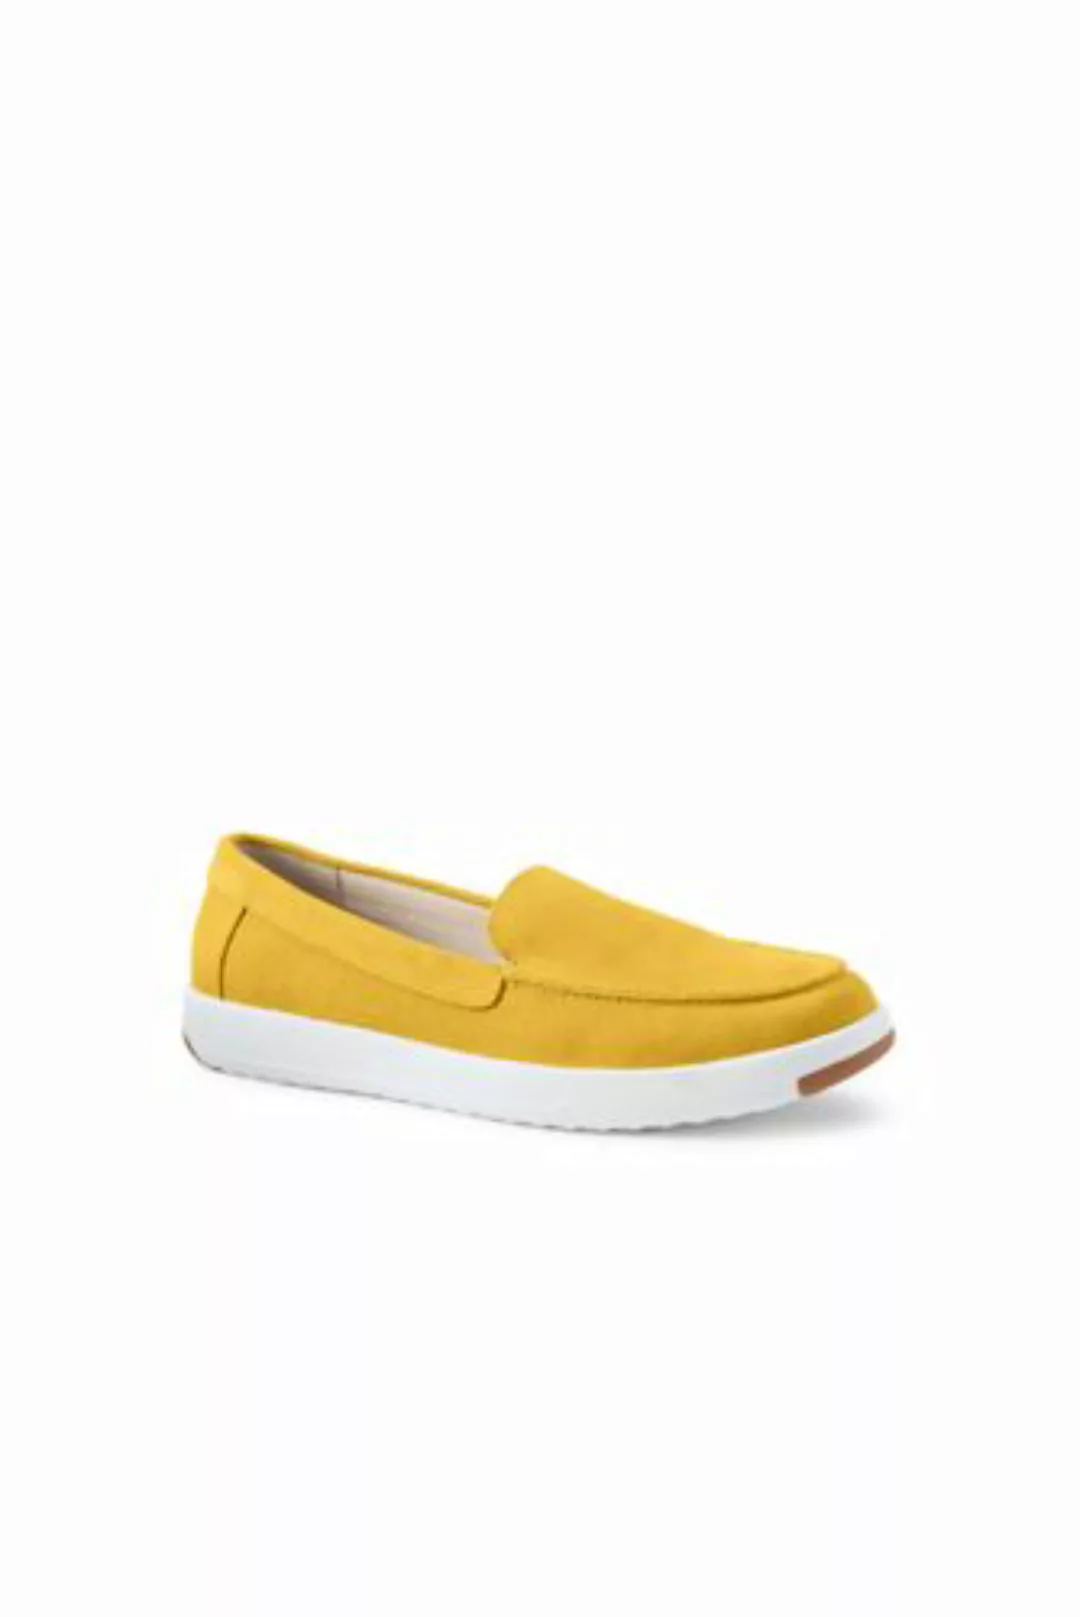 Federleichte Komfort-Loafer, Damen, Größe: 37.5 Weit, Gelb, Rauleder, by La günstig online kaufen